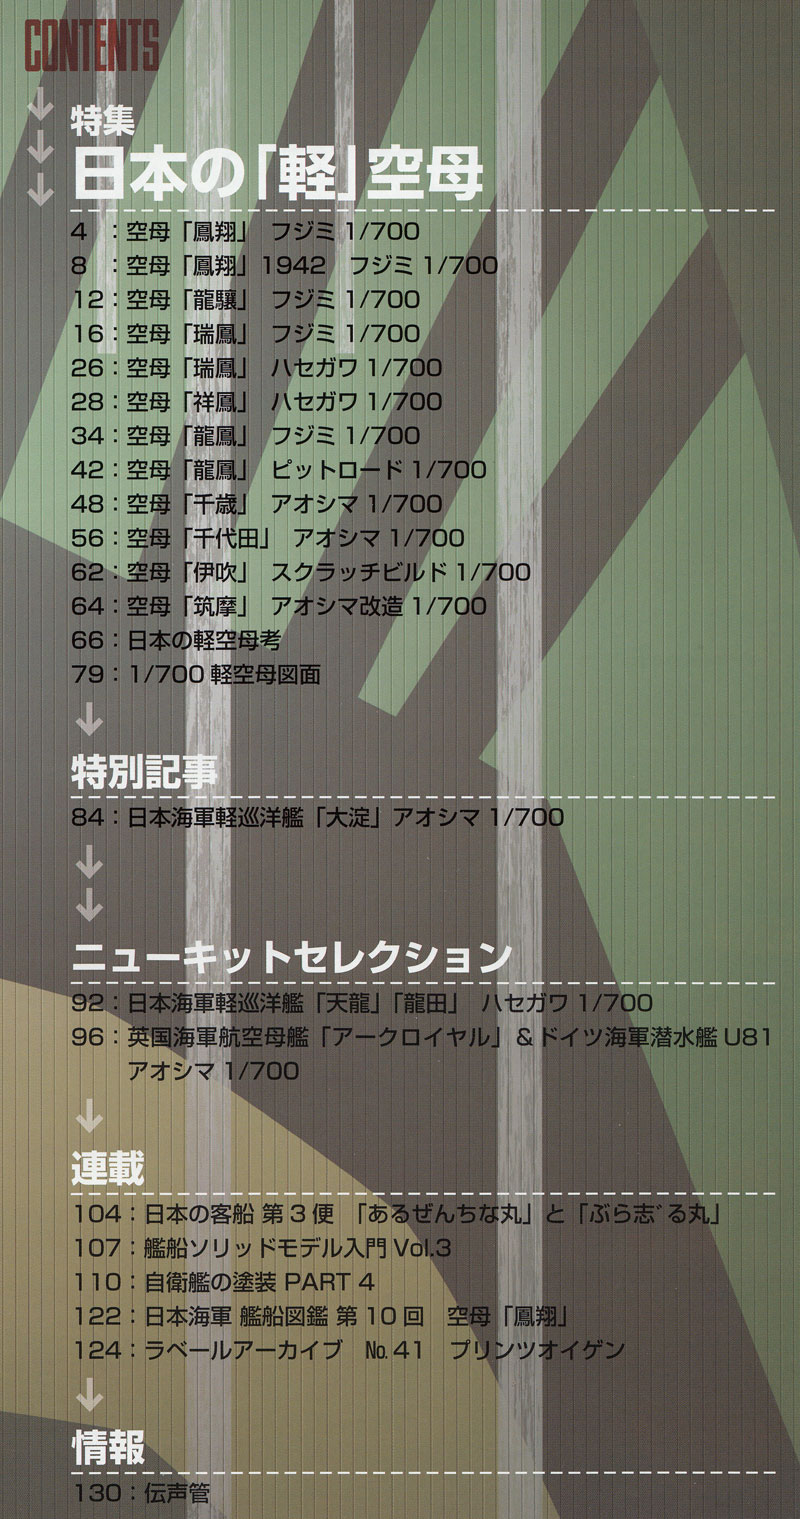 艦船模型スペシャル No.56 日本の軽空母 本 (モデルアート 艦船模型スペシャル No.056) 商品画像_1